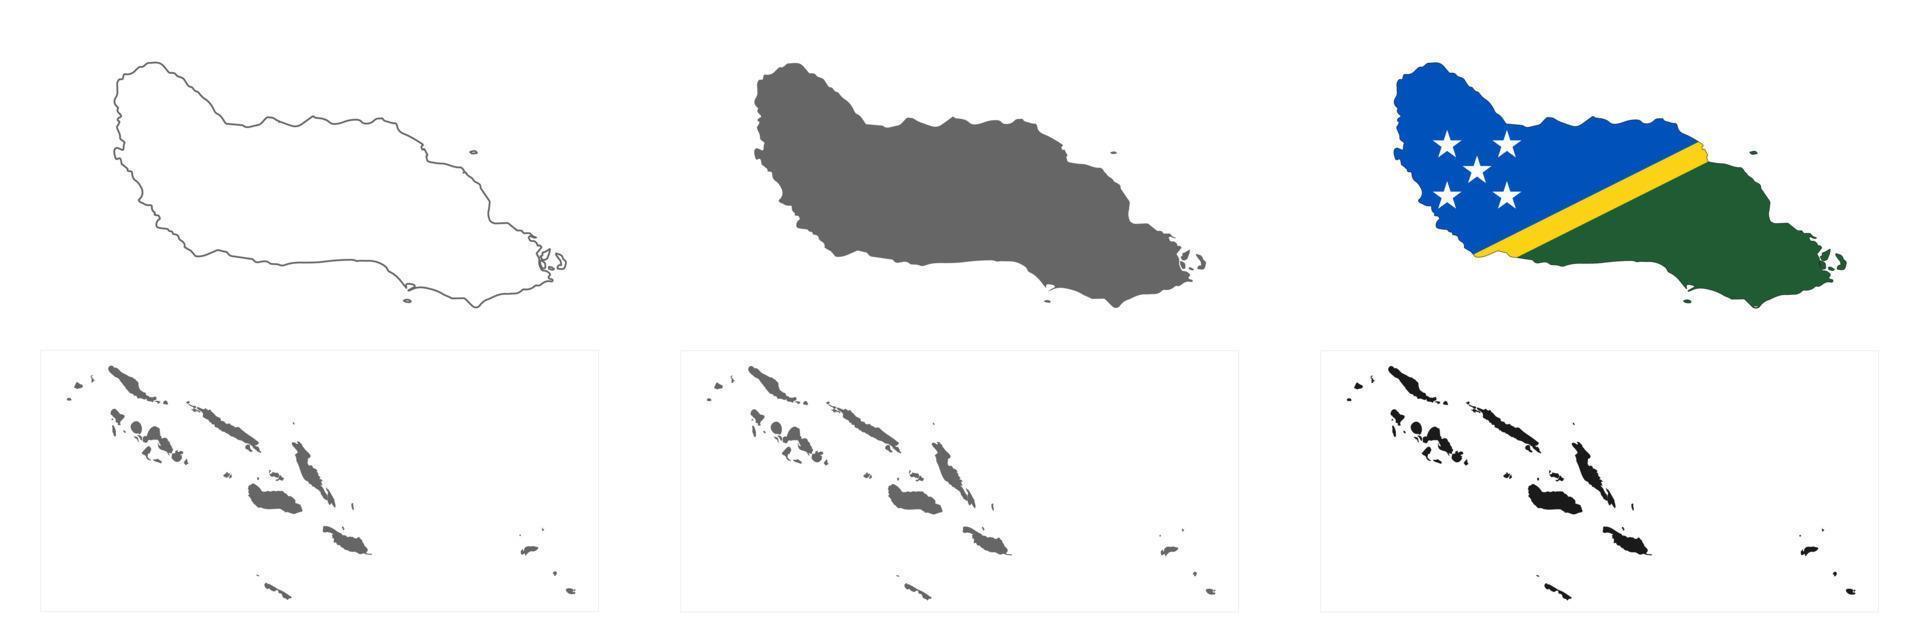 Ilhas Salomão altamente detalhadas com mapa de guadalcanal com fronteiras isoladas no fundo vetor